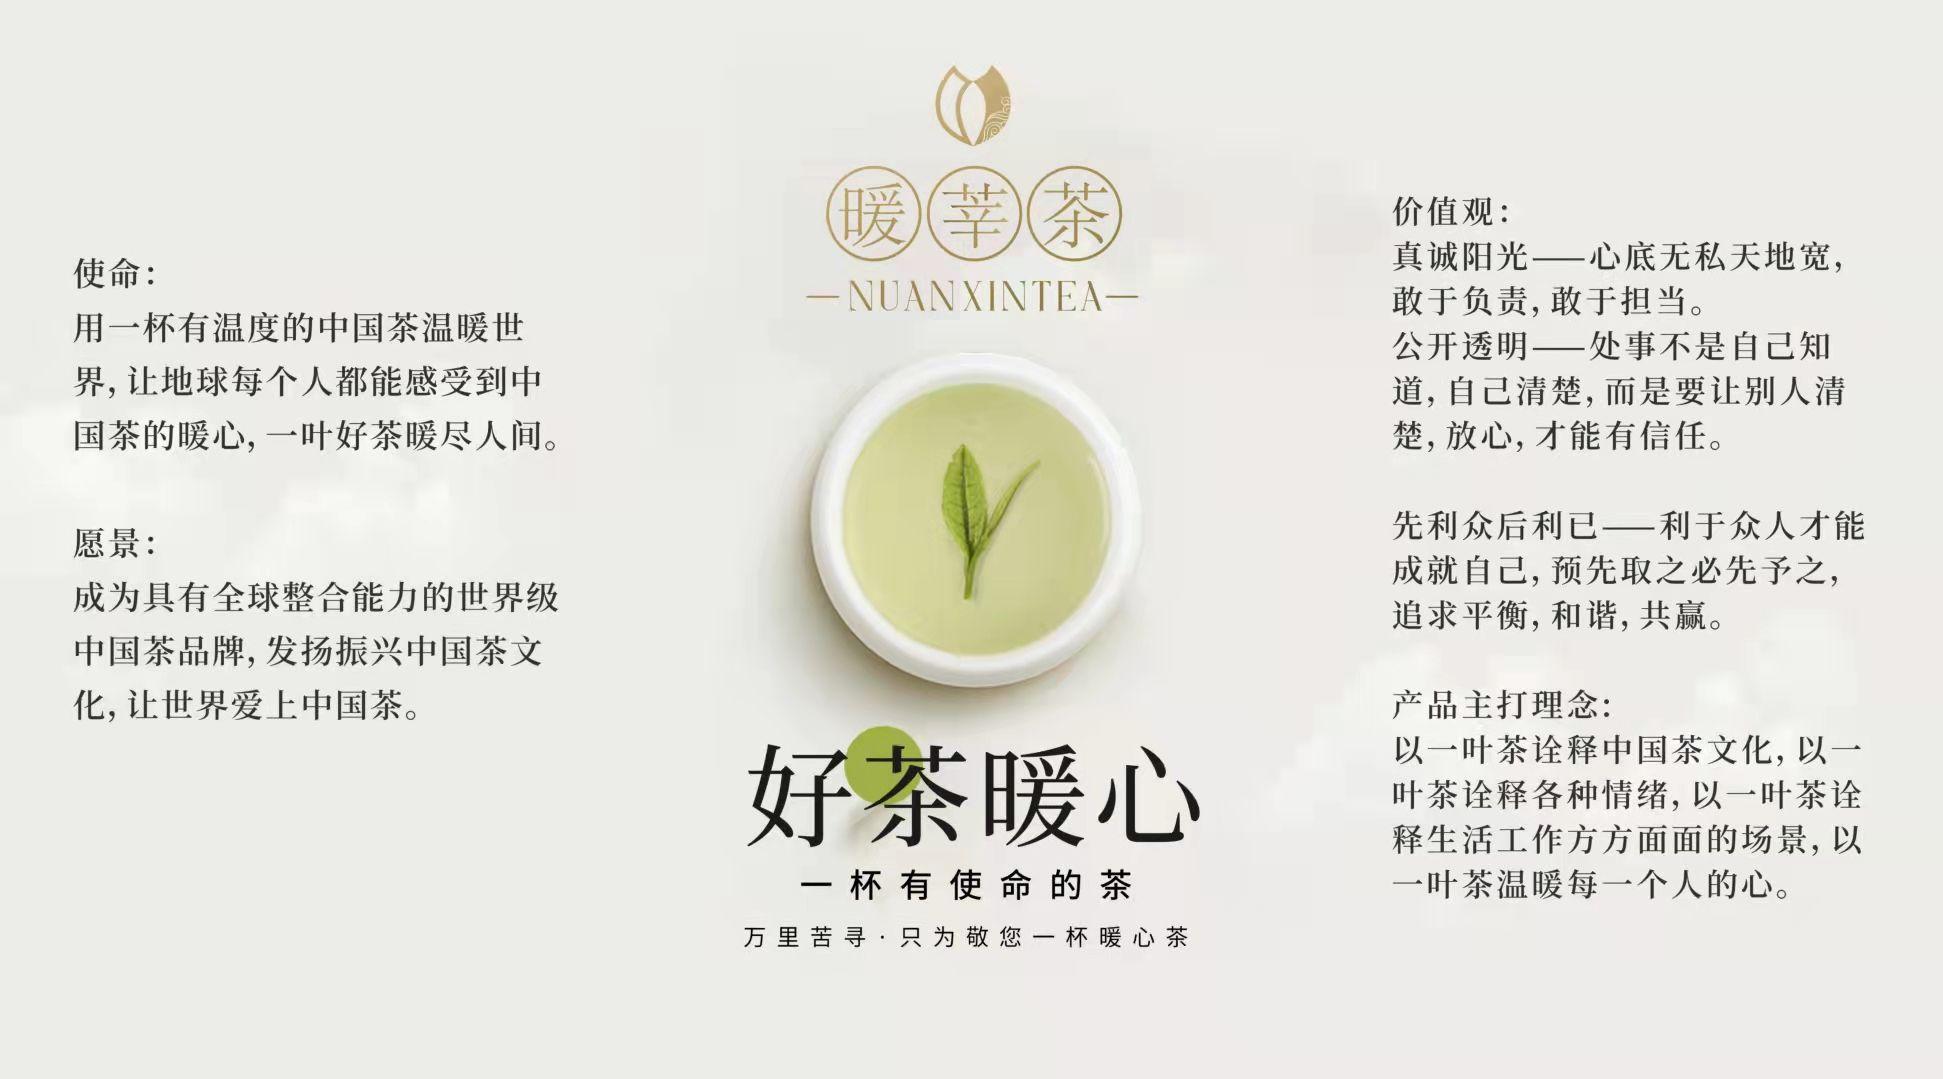 暖莘茶为何被指蹭小罐茶热度,笔者认为,暖莘茶的广告语与小罐茶的广告